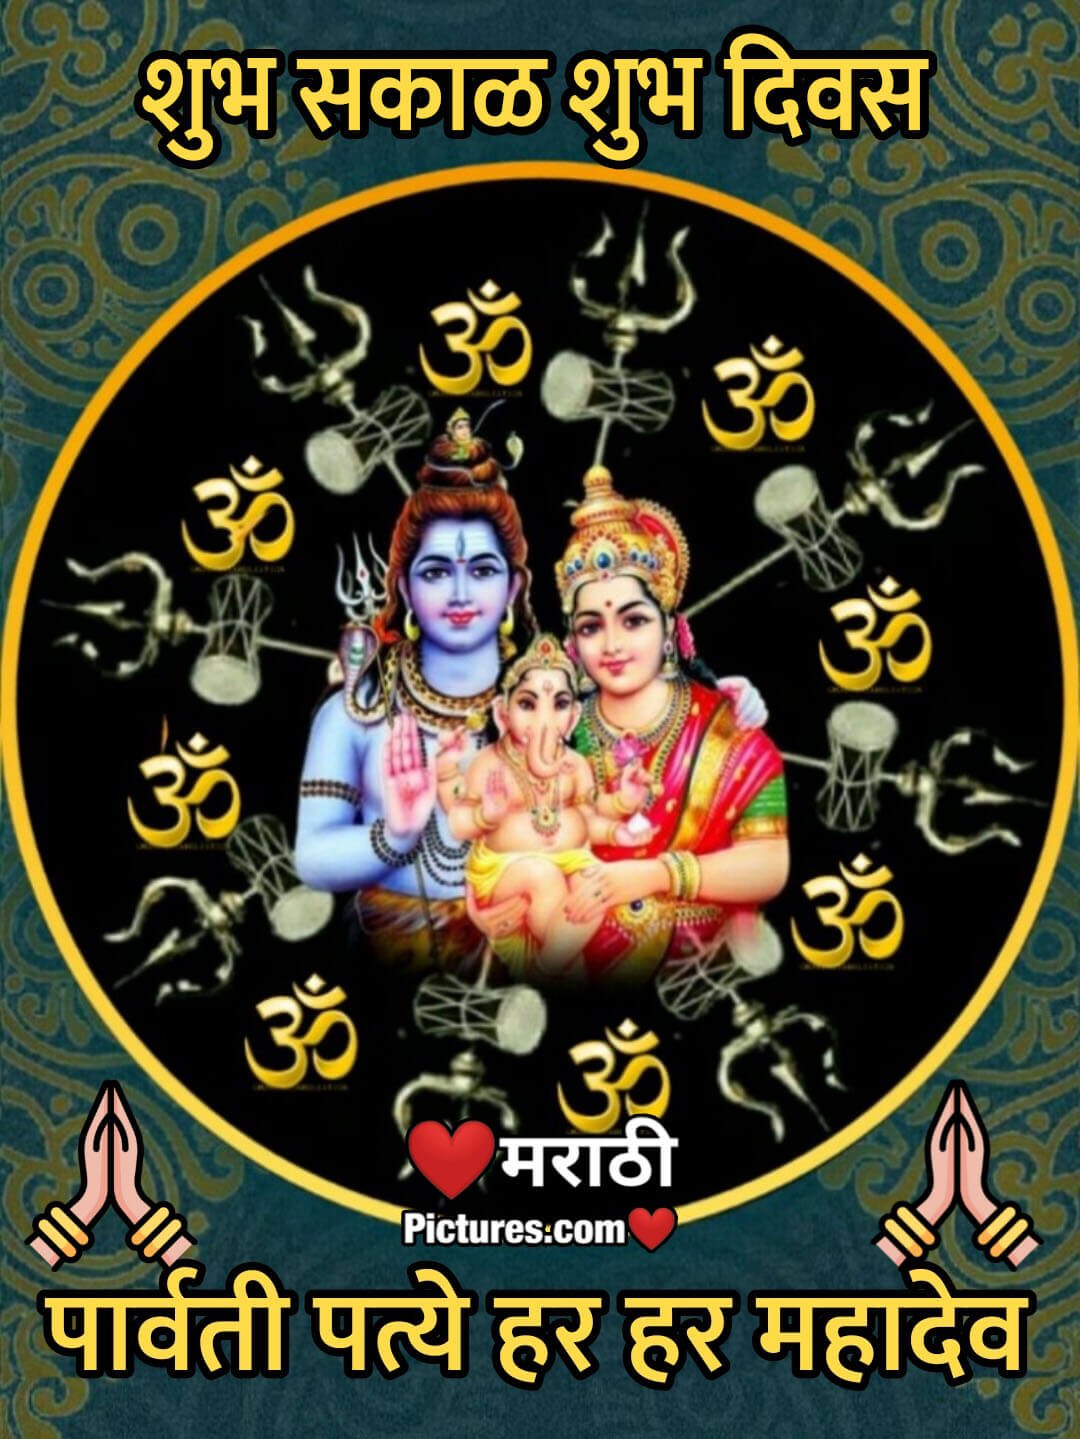 Shubh Sakal Shiv Parvati Image